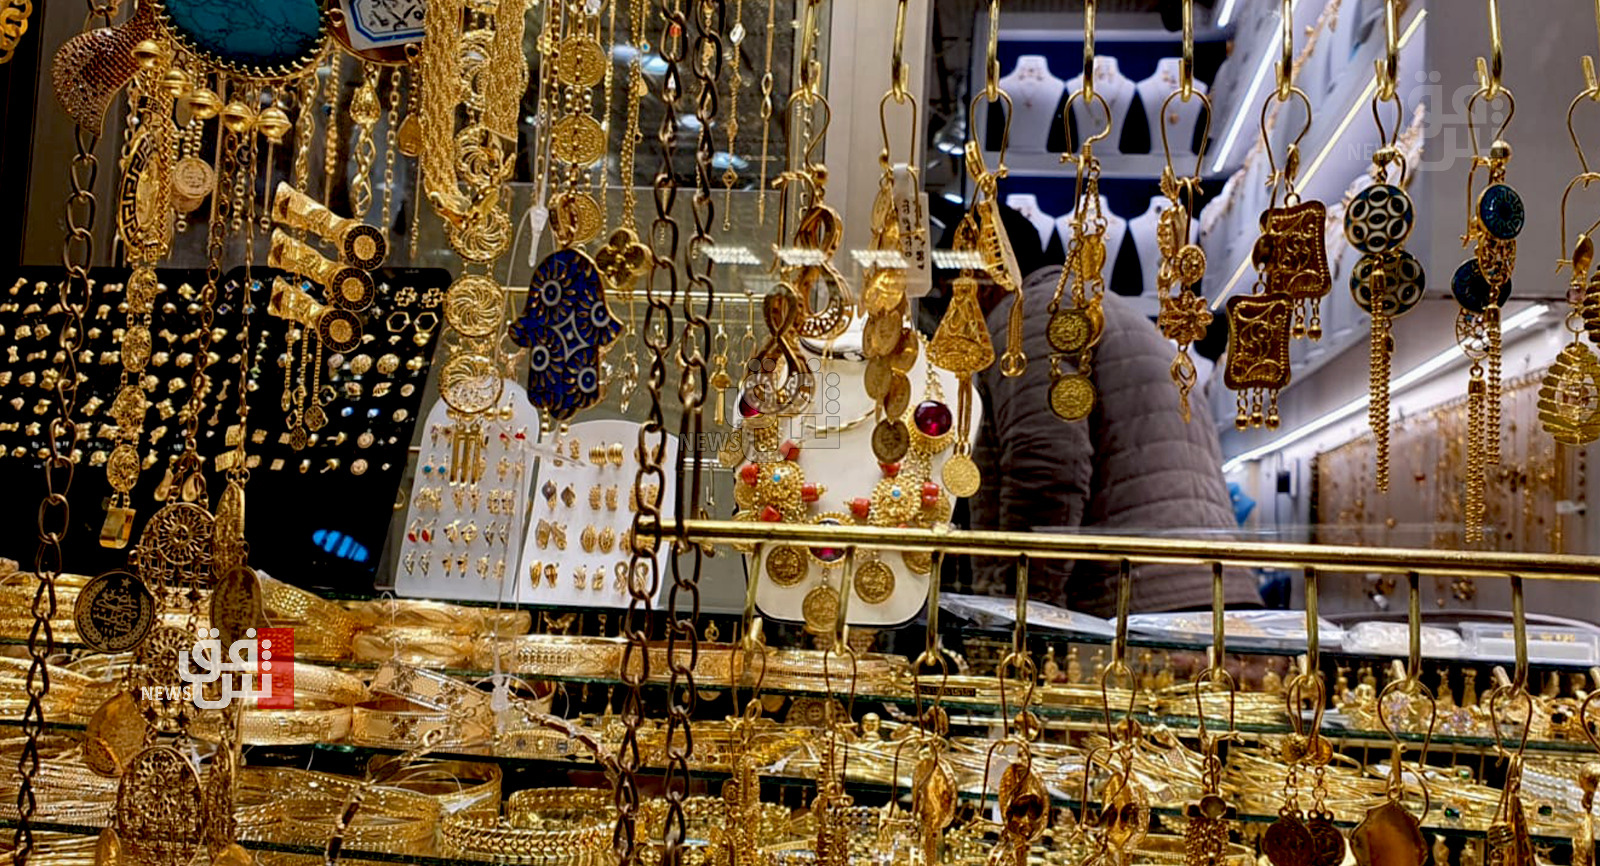 "النساء المستفيد الأول" .. تراجع الدولار يحرّك سوق الذهب في السليمانية (صور)